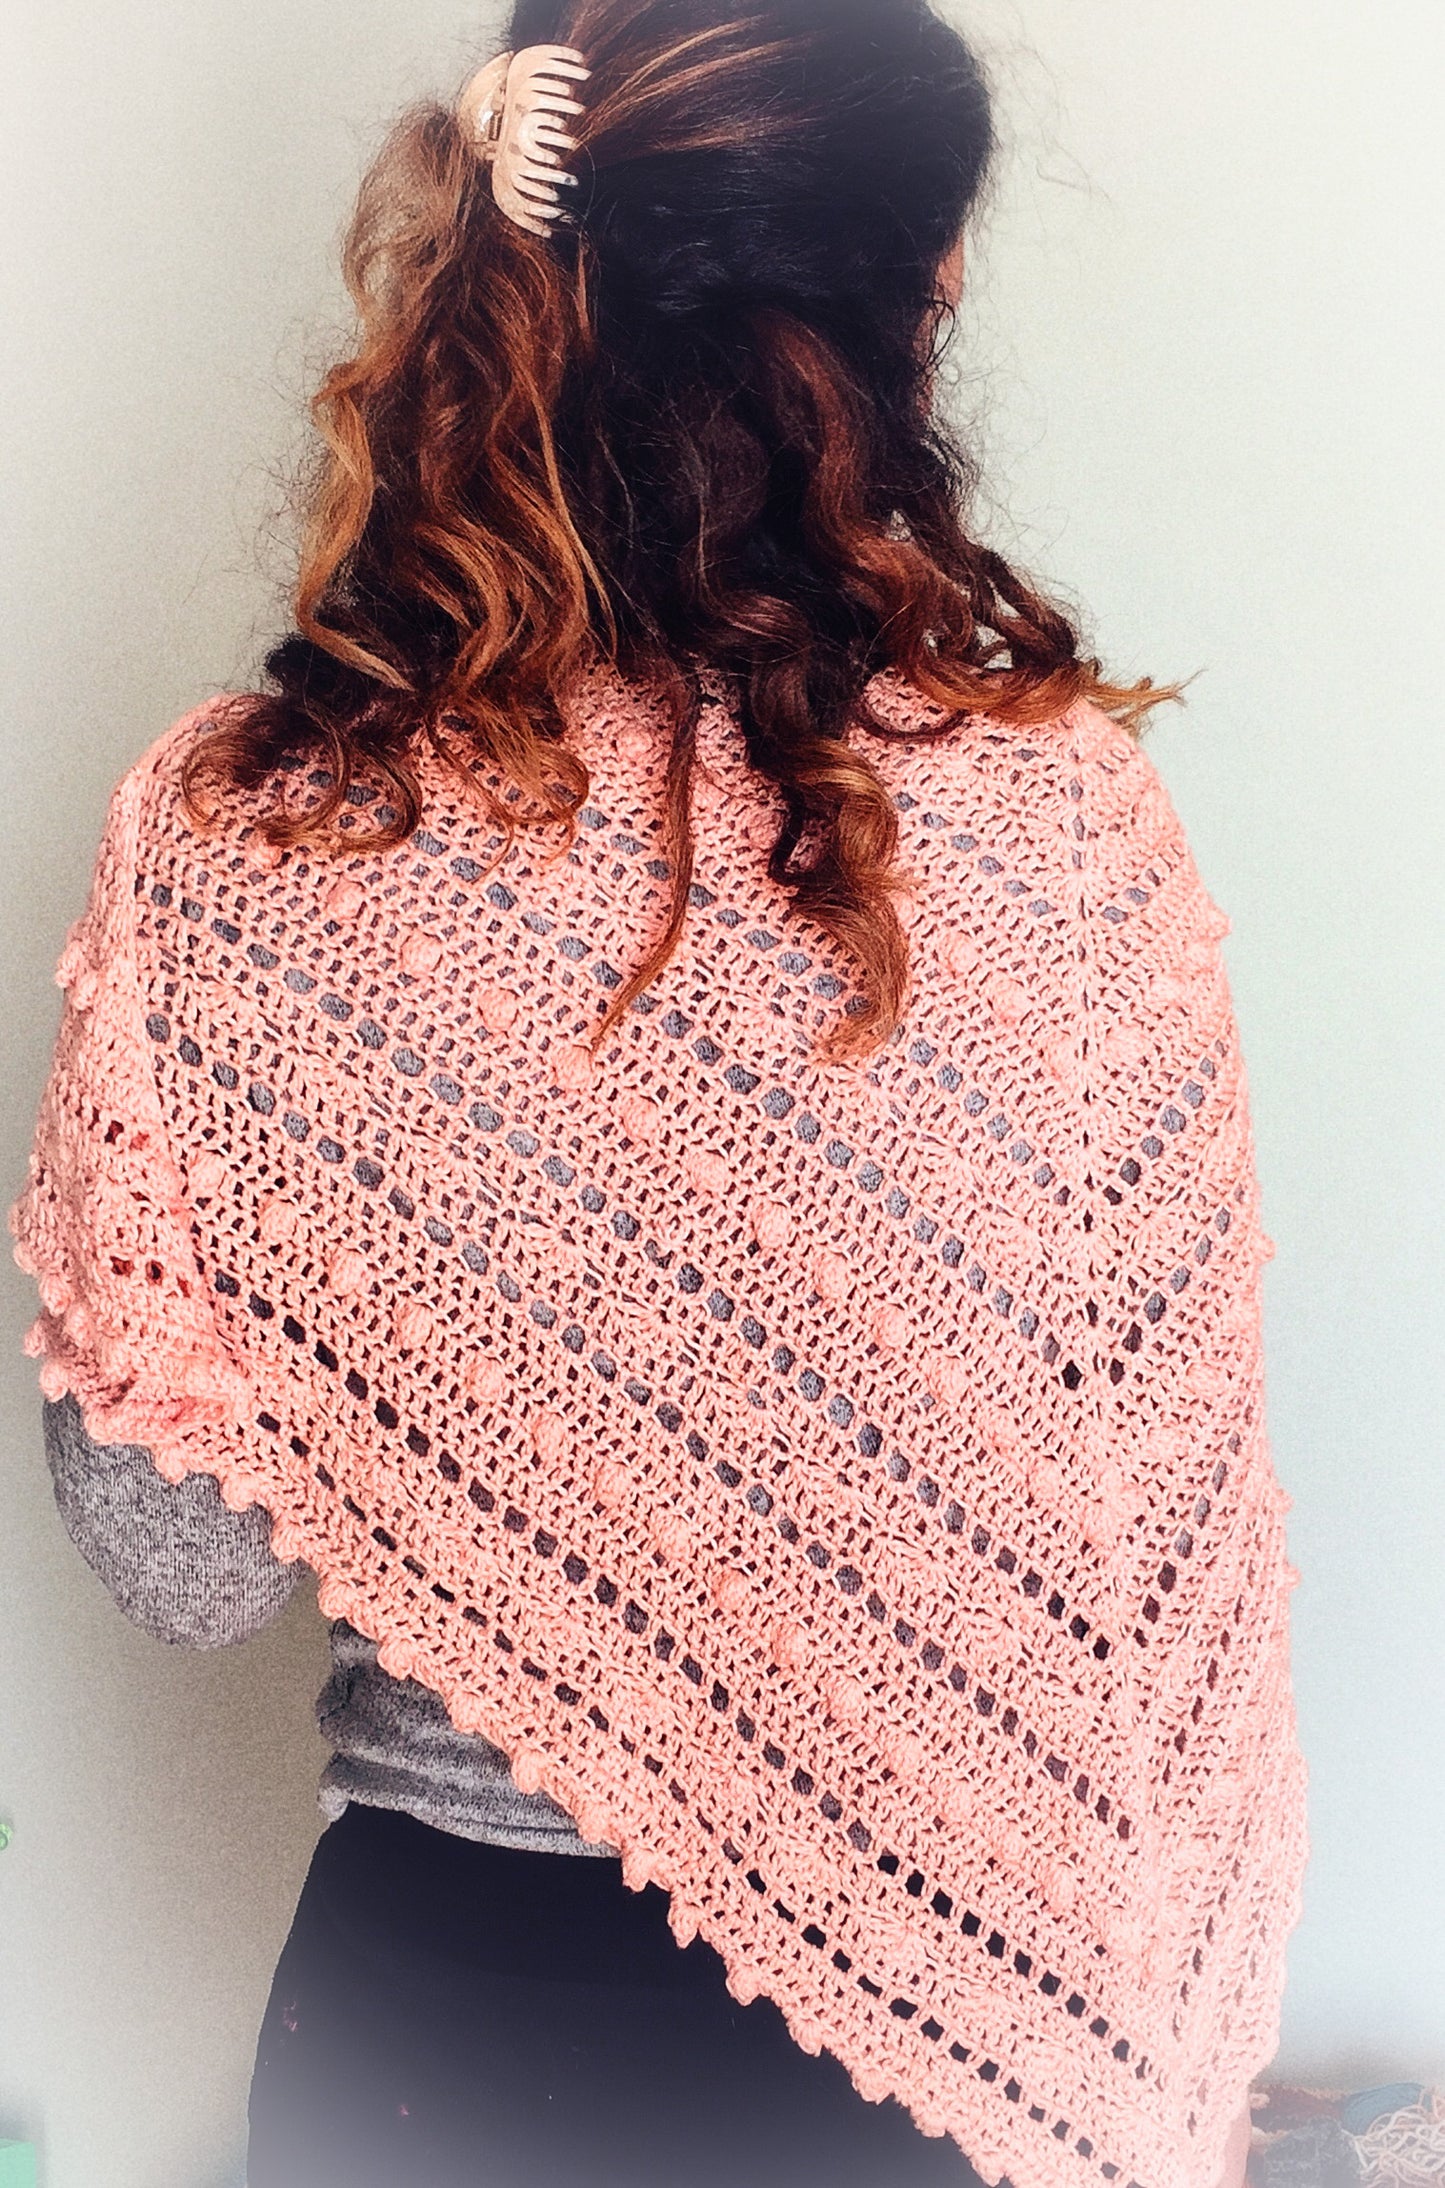 The Fall Shawl crochet pattern